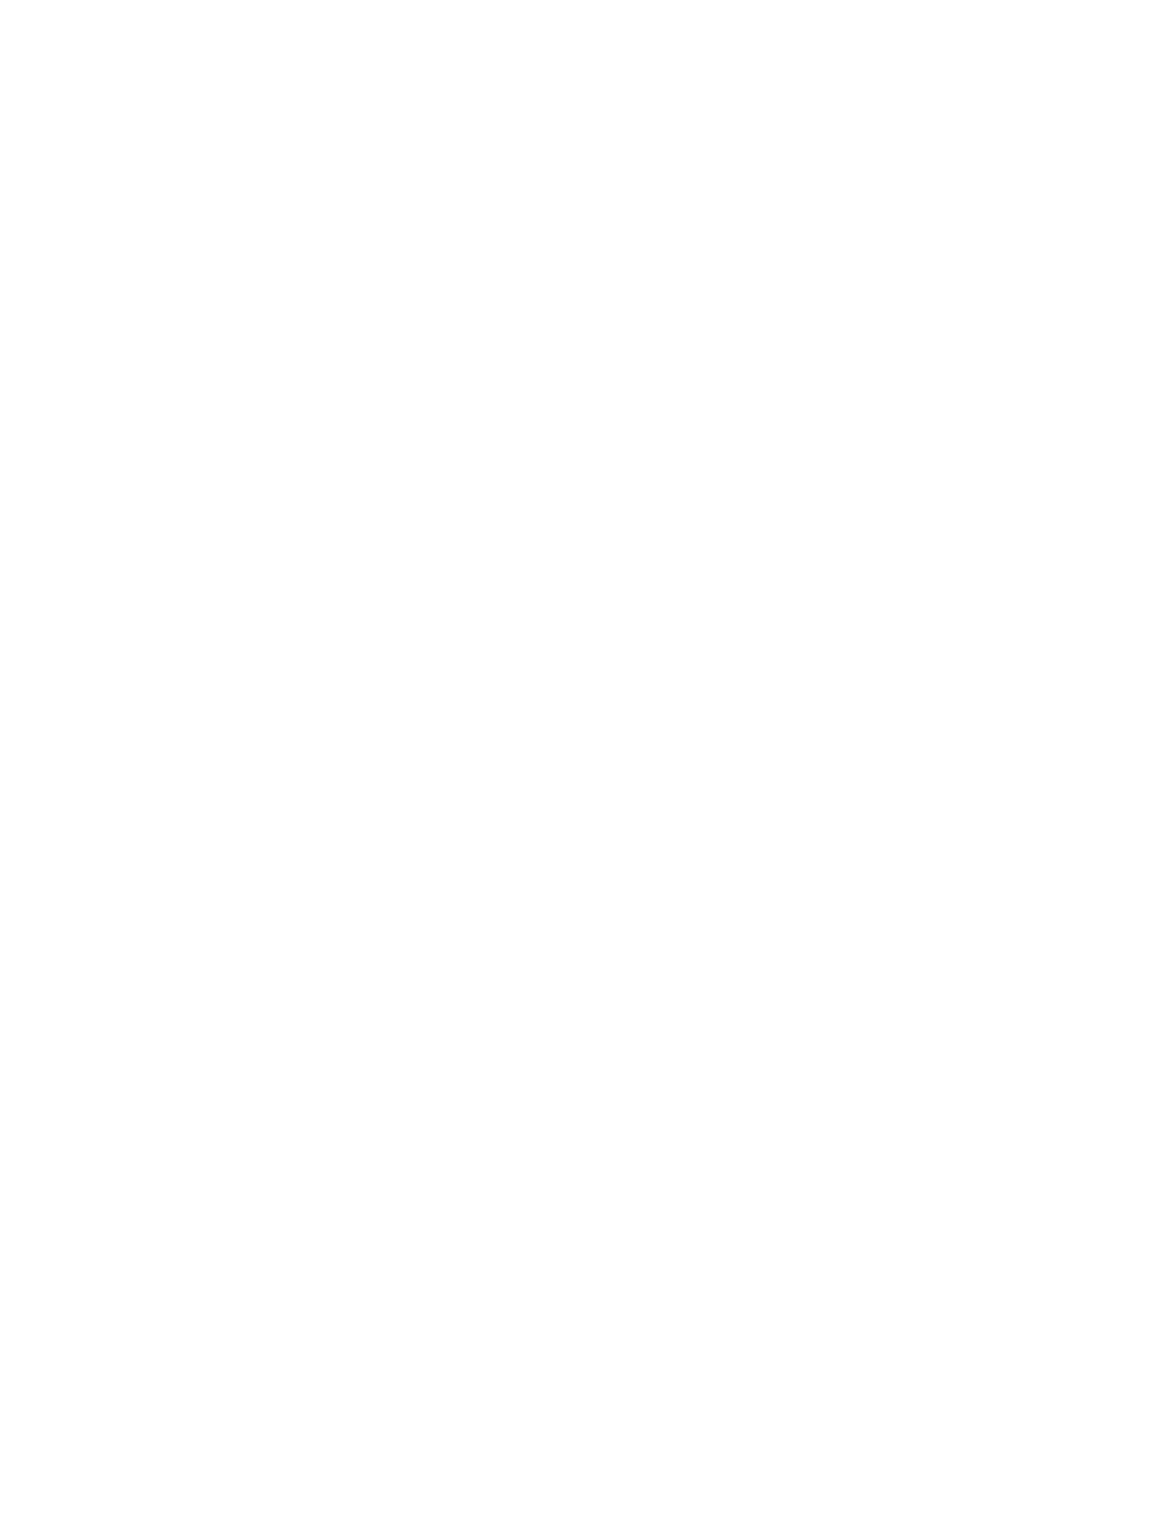 Impinj logo for dark backgrounds (transparent PNG)